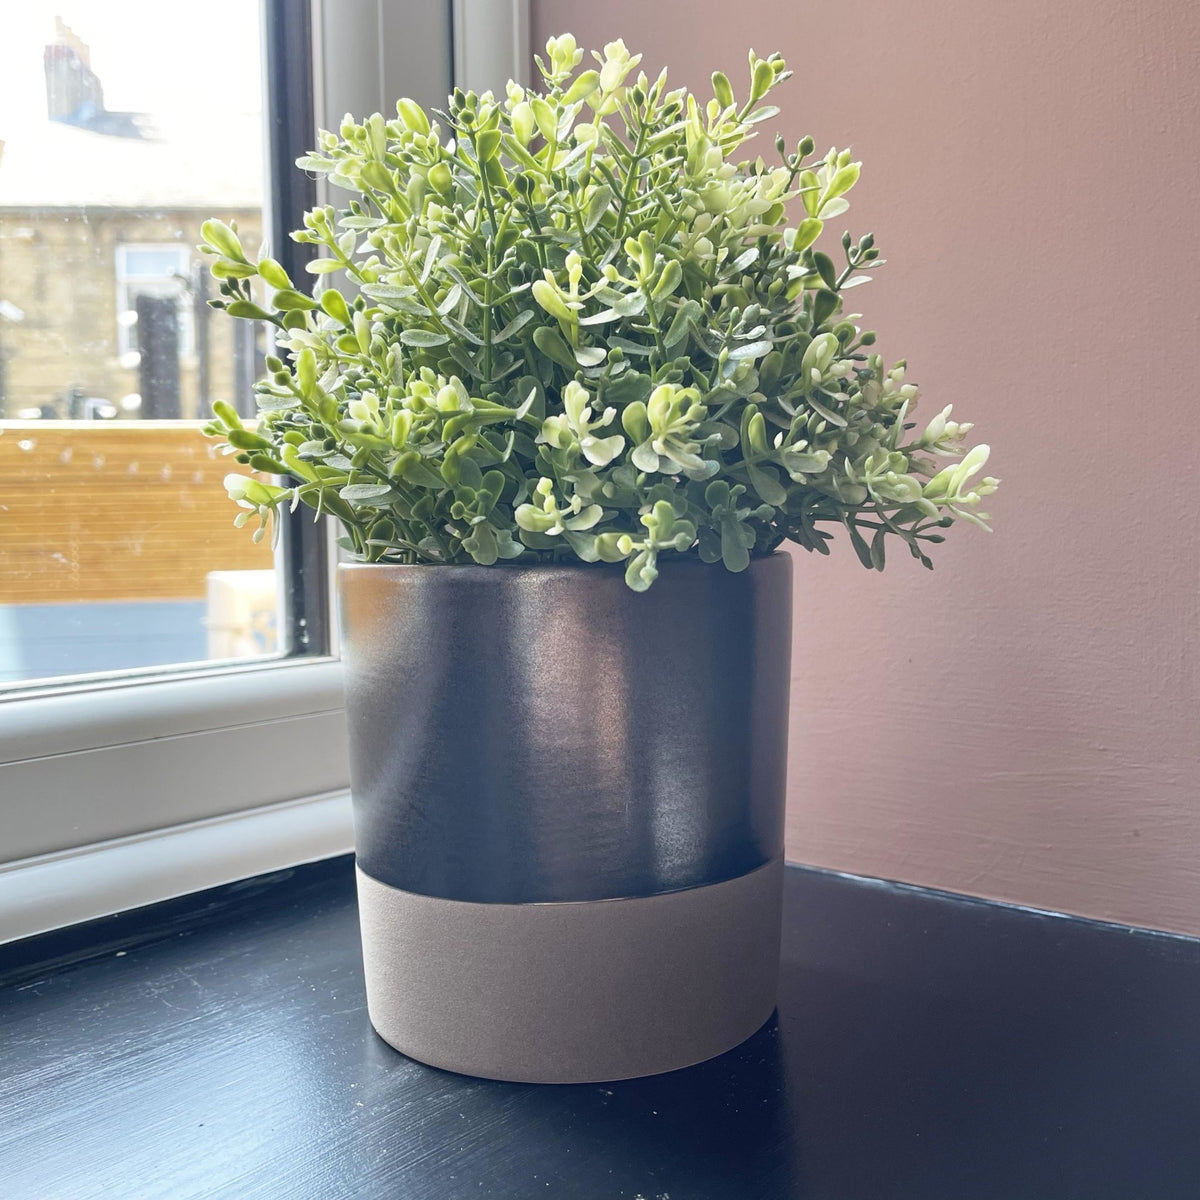 Terra Grey Metallic Style Planter Medium on windowsill